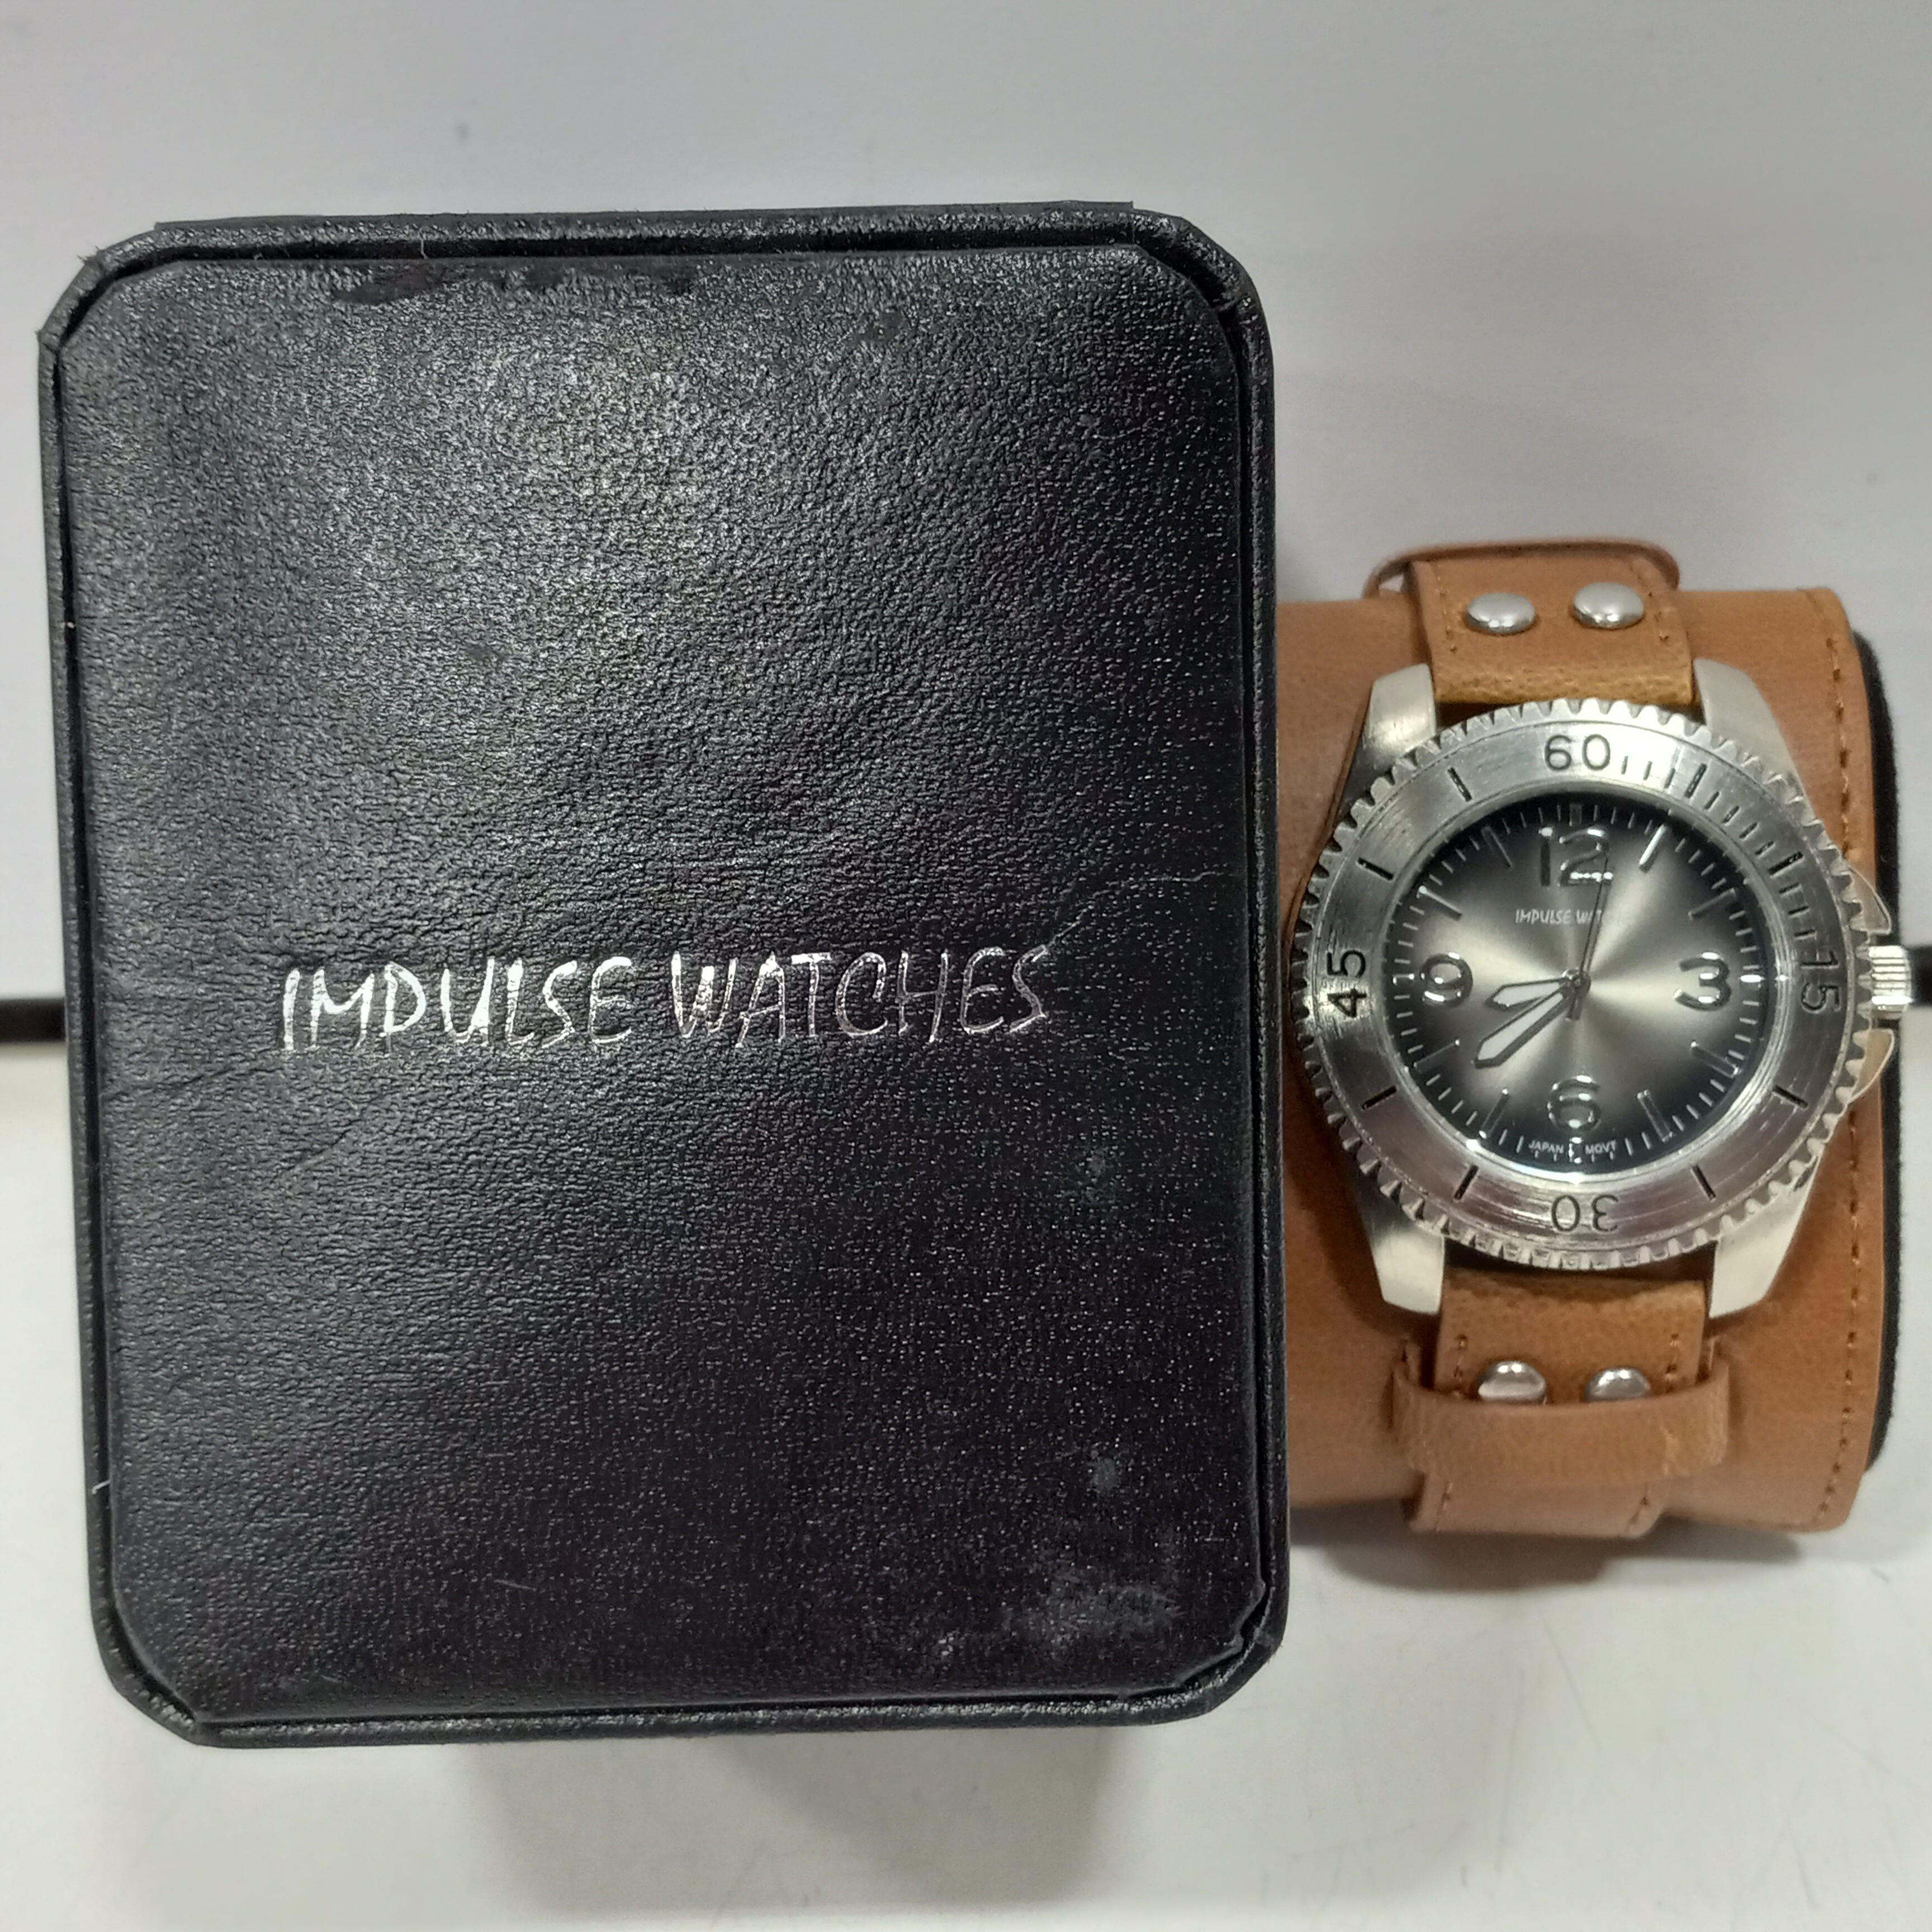 Nu Republic Impulse Smartwatch with 1.9